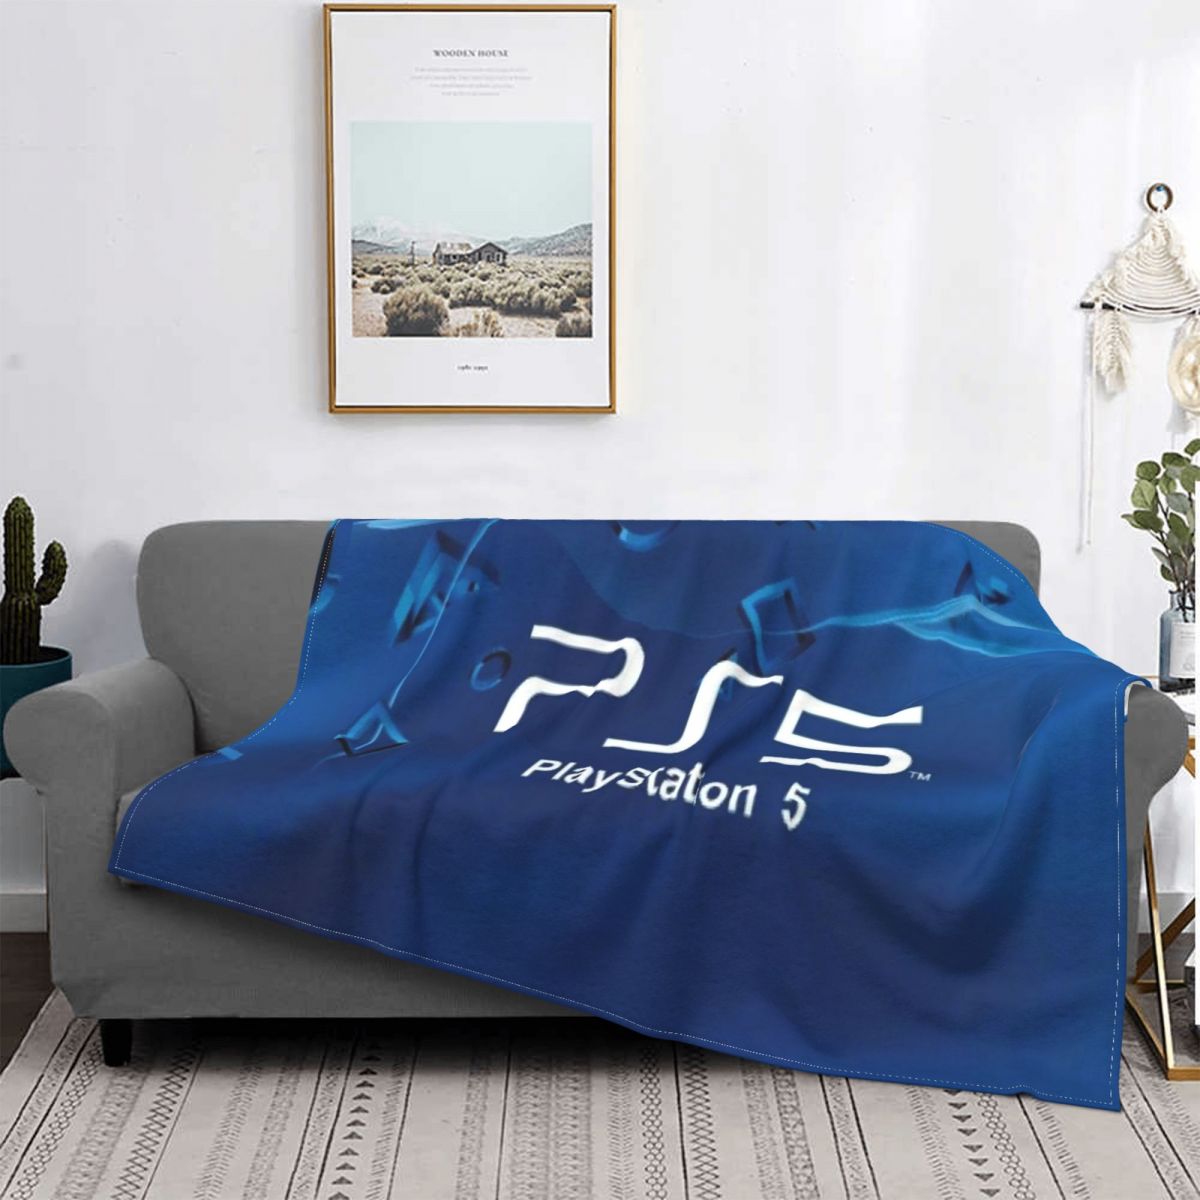 Playstation-1659-couverture-de-lit-en-fausse-fourrure-Plaid-drap-de-pique-nique-tapis-cor-en